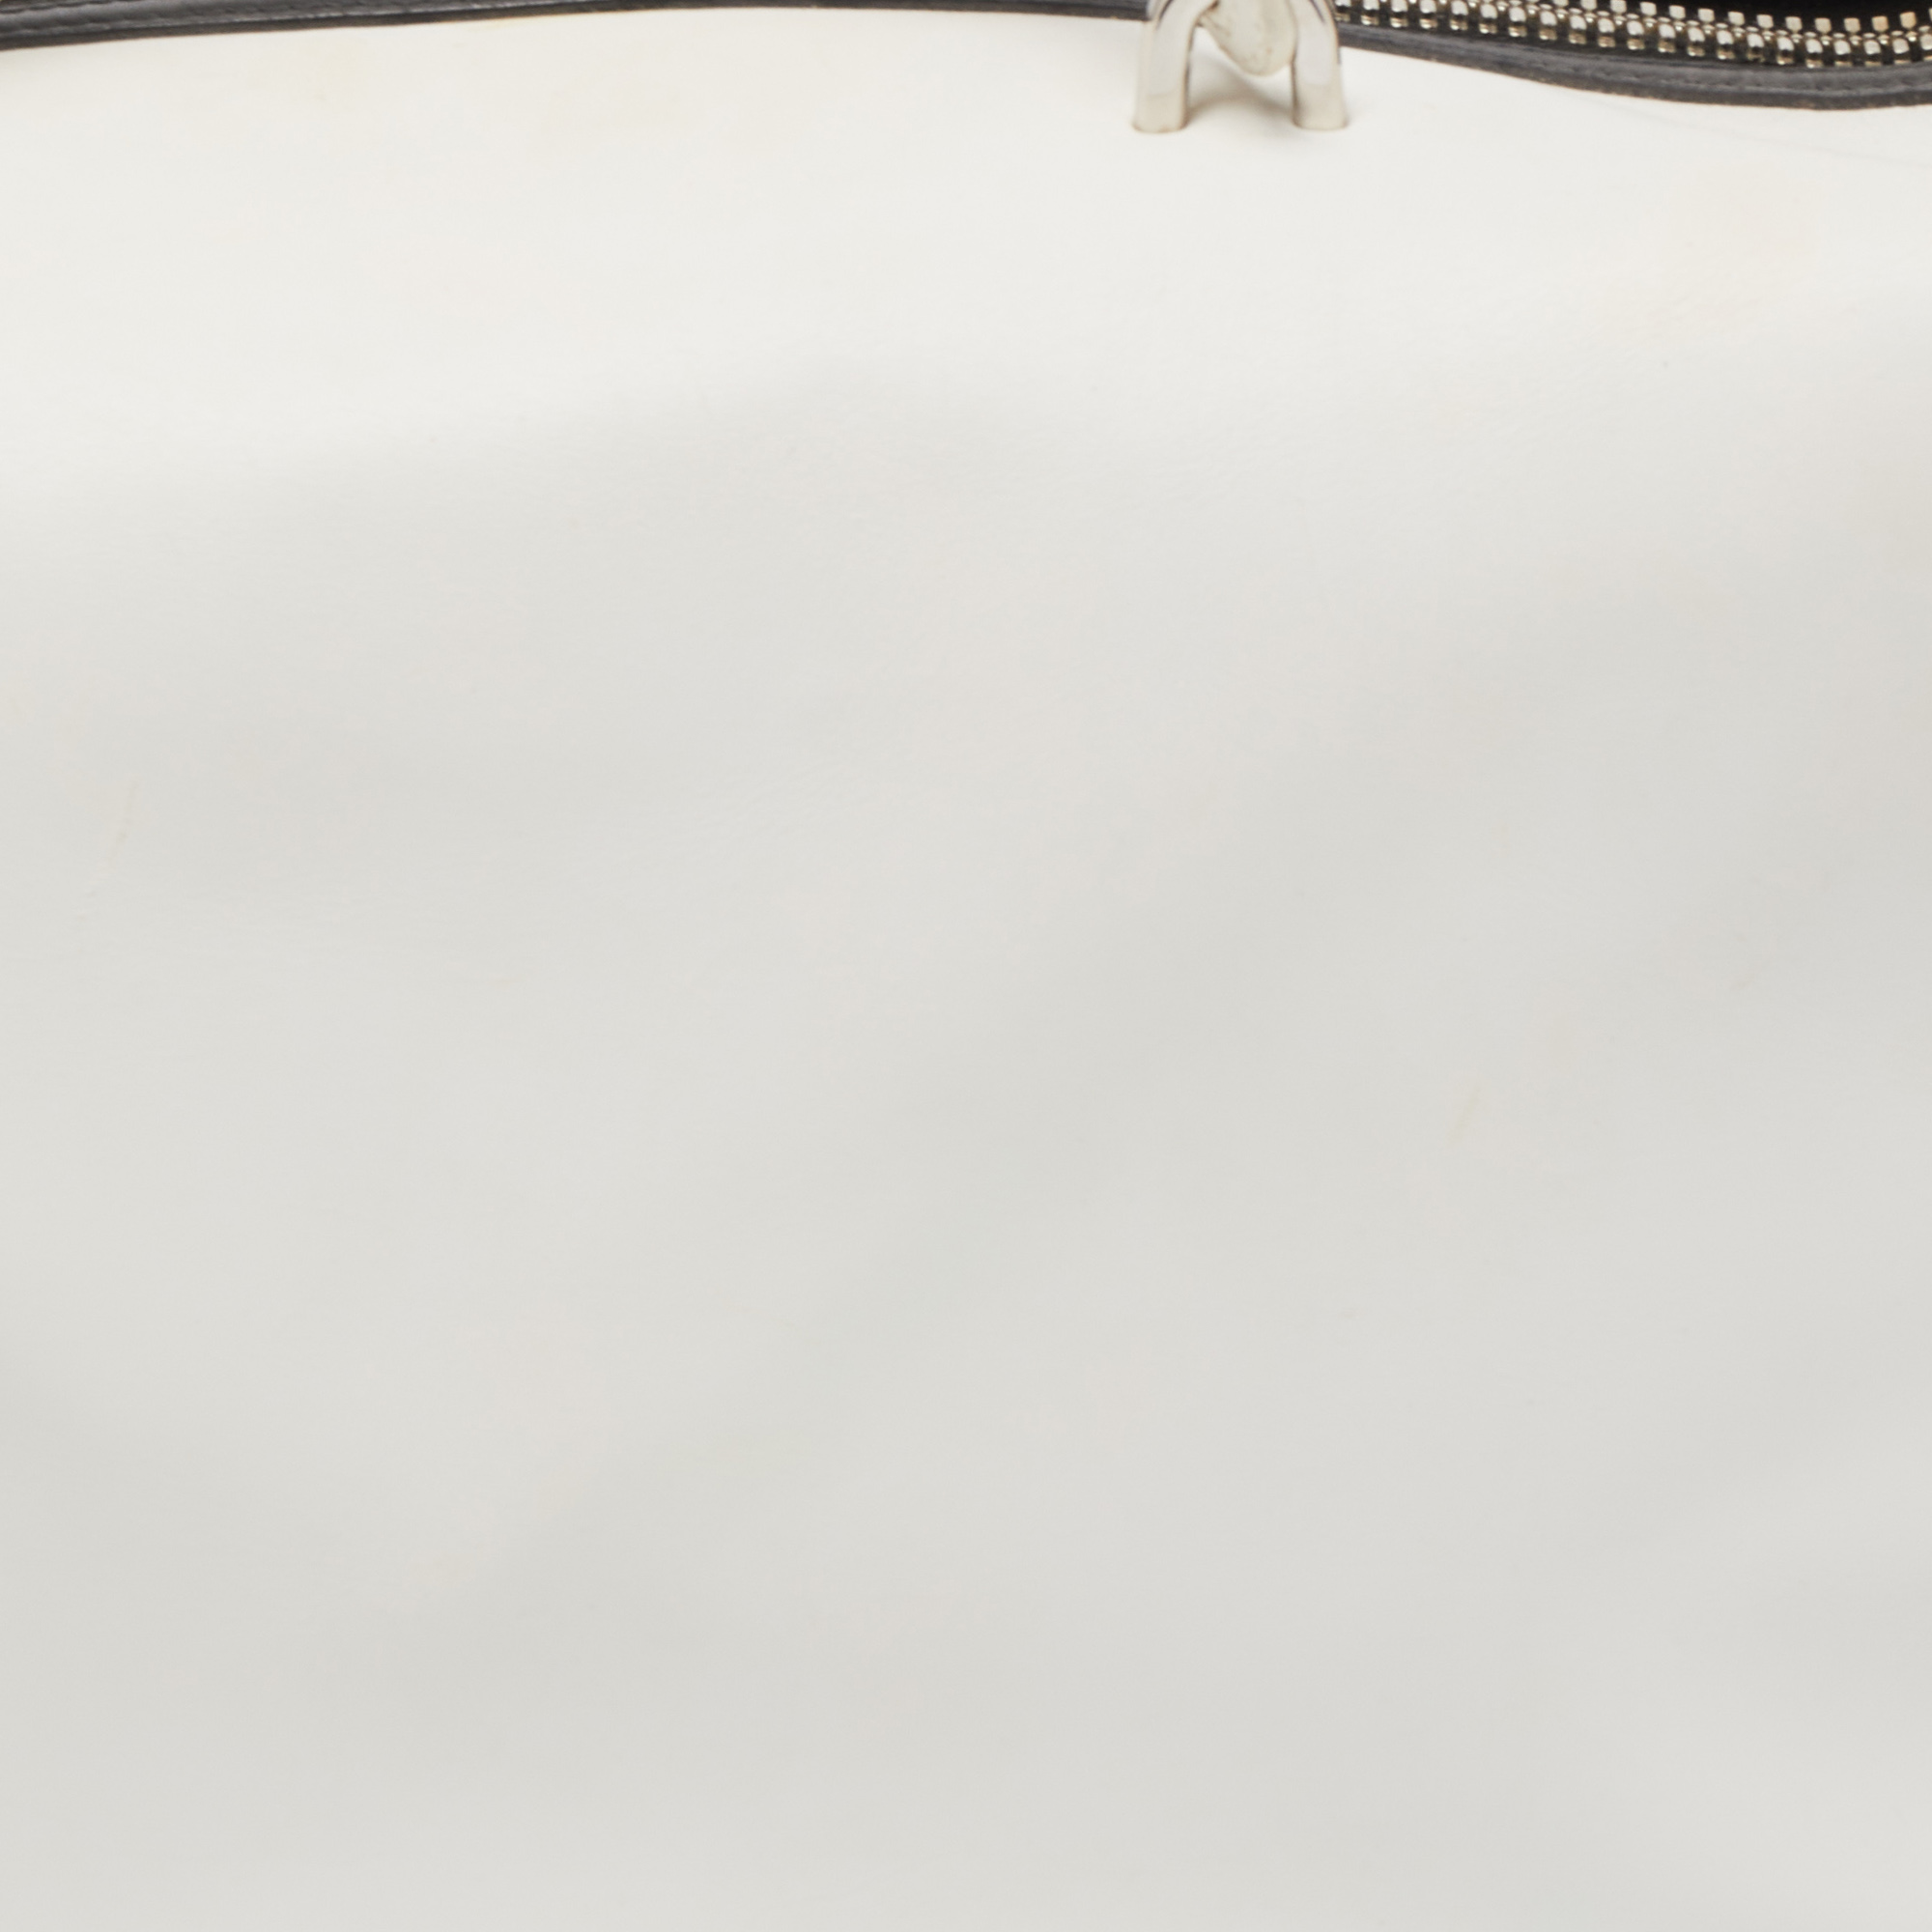 Balenciaga White/Black Leather Triple Boston Bag